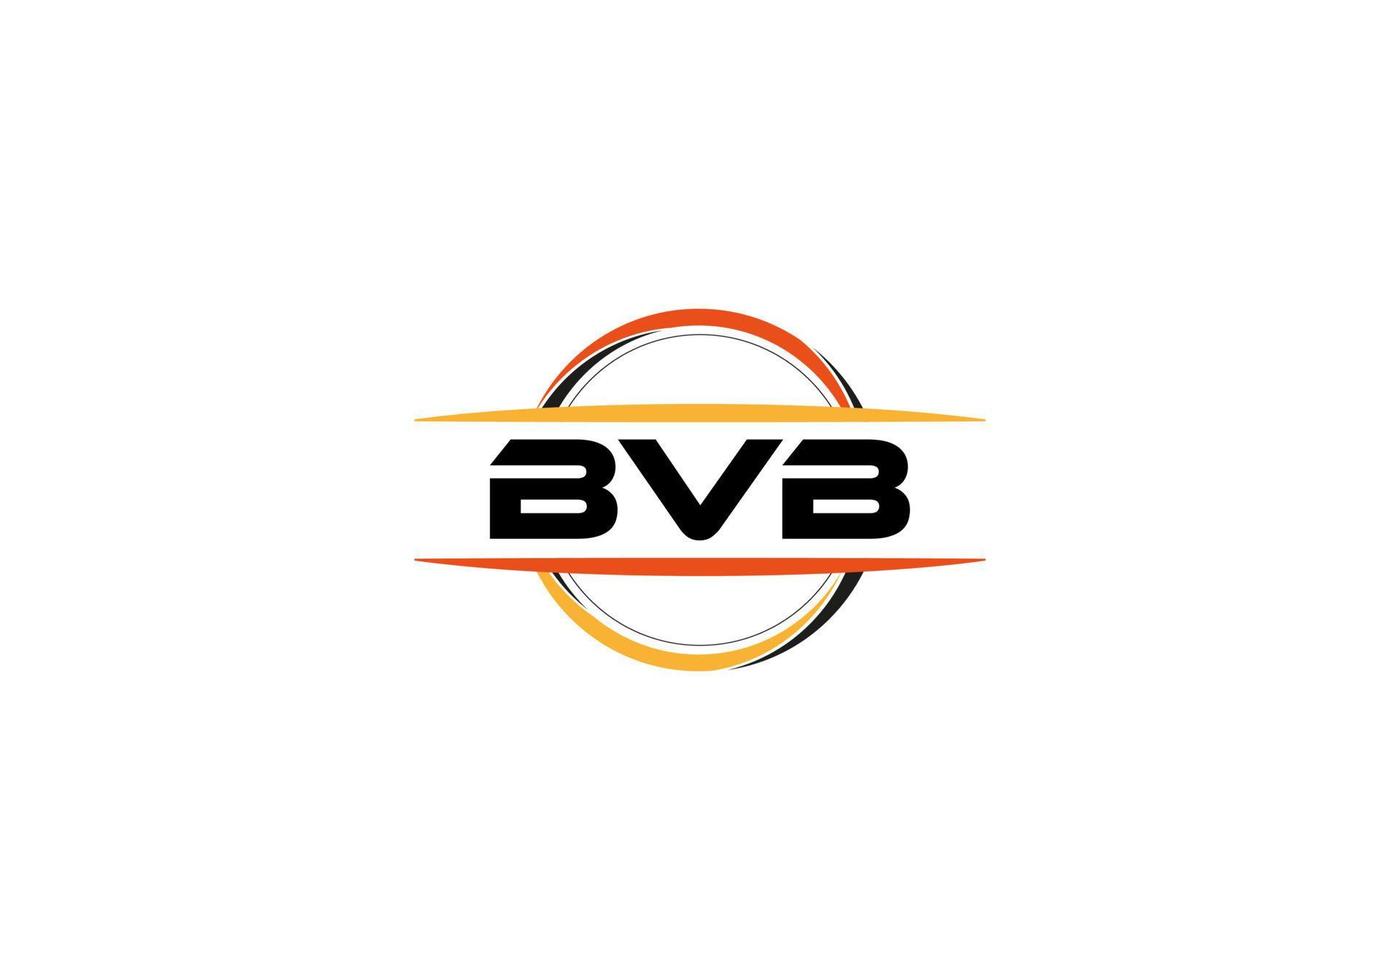 bvb-Buchstaben-Lizenzgebühren-Mandala-Form-Logo. bvb-Pinsel-Kunst-Logo. bvb-Logo für ein Unternehmen, ein Geschäft und eine kommerzielle Nutzung. vektor